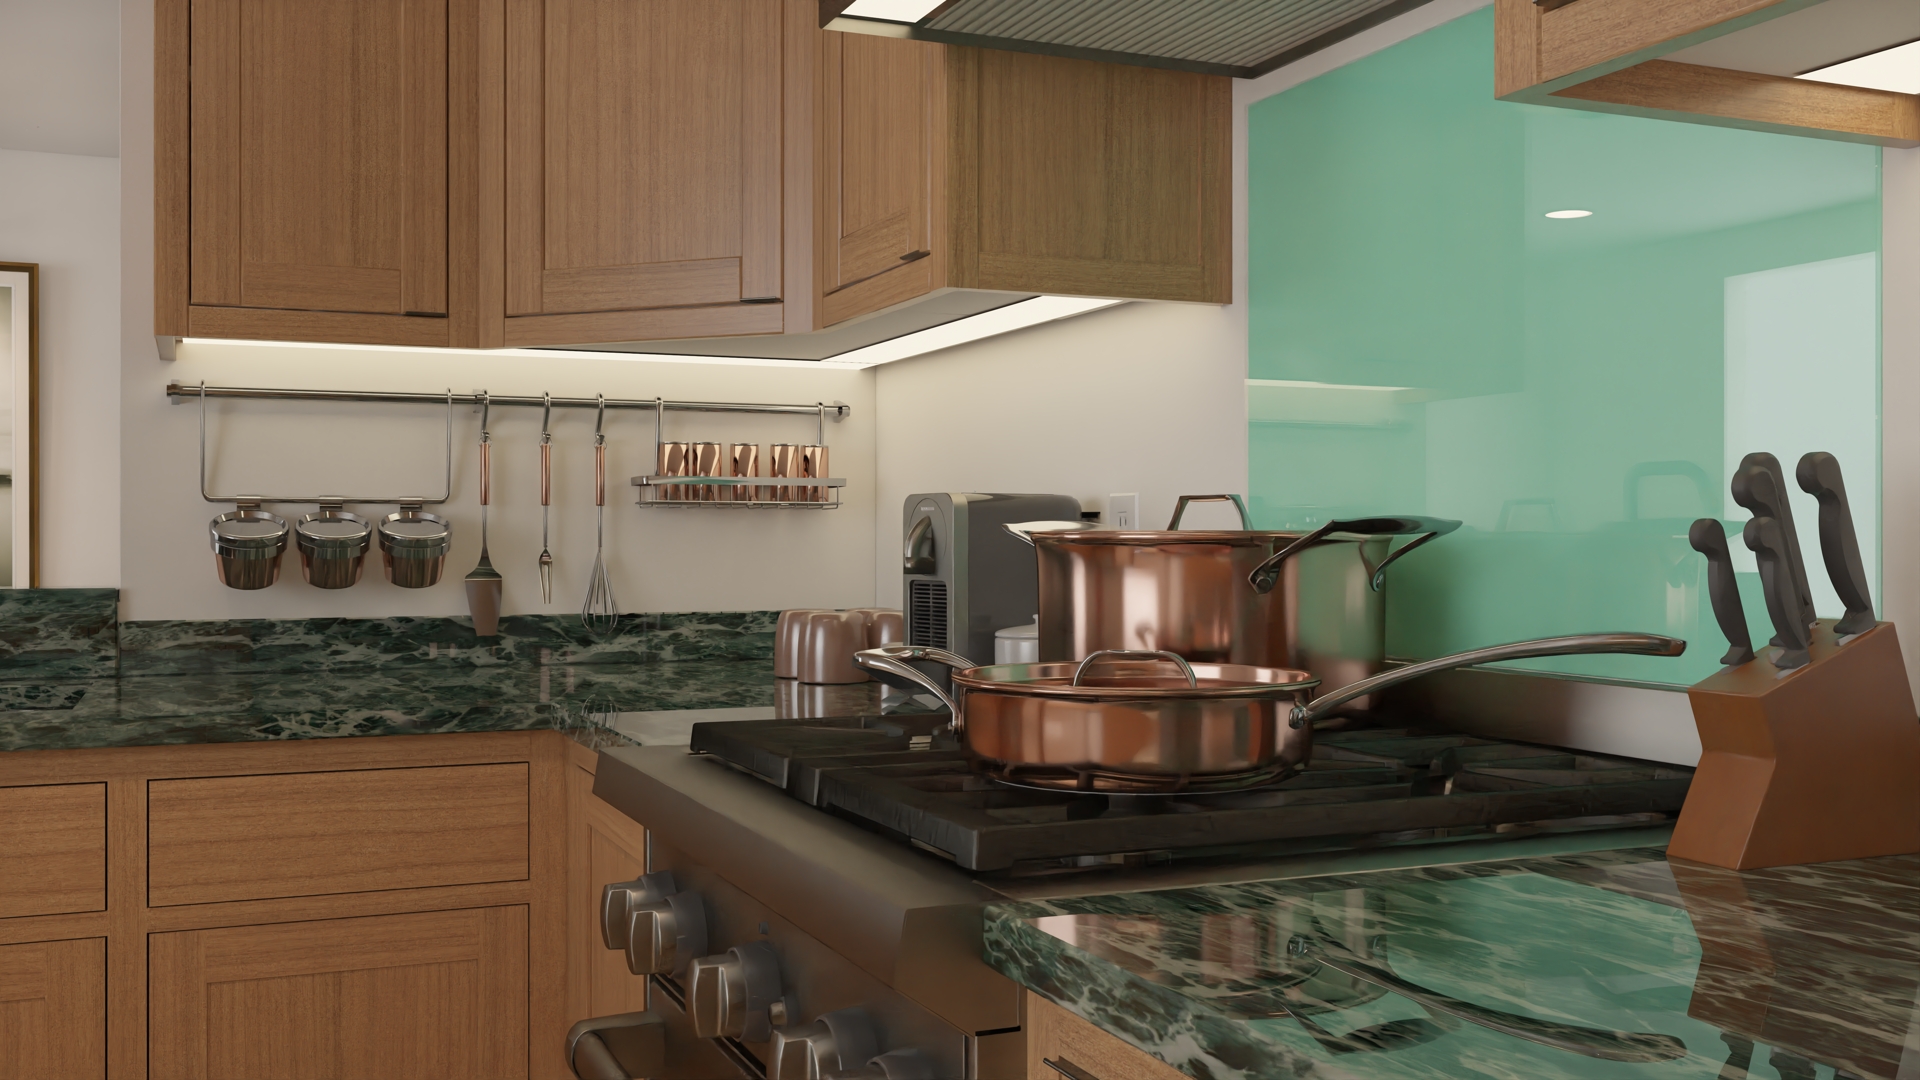 Dacri Kitchen08 - copper-coookware.jpg